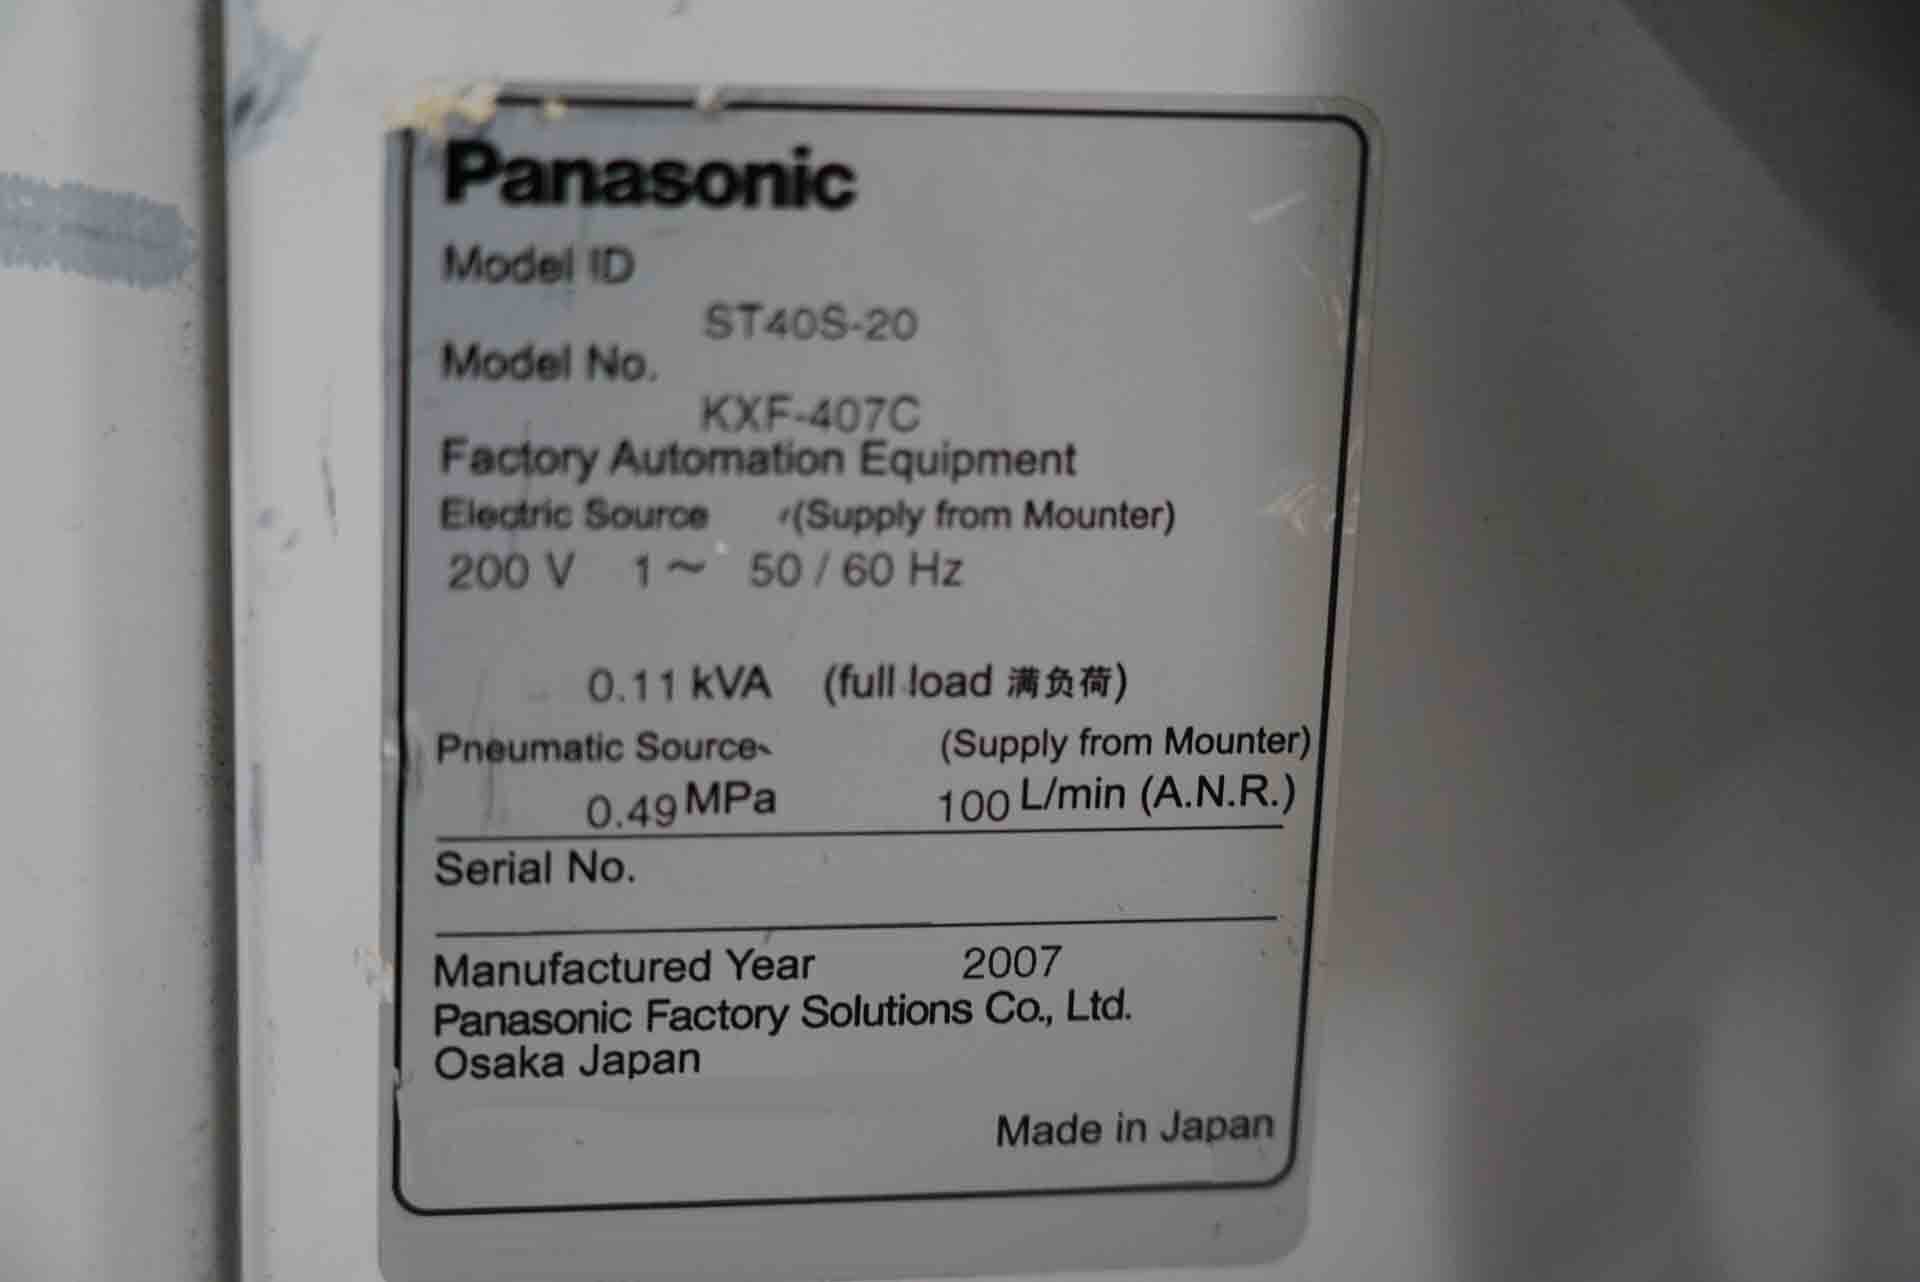 フォト（写真） 使用される PANASONIC CM602-L 販売のために